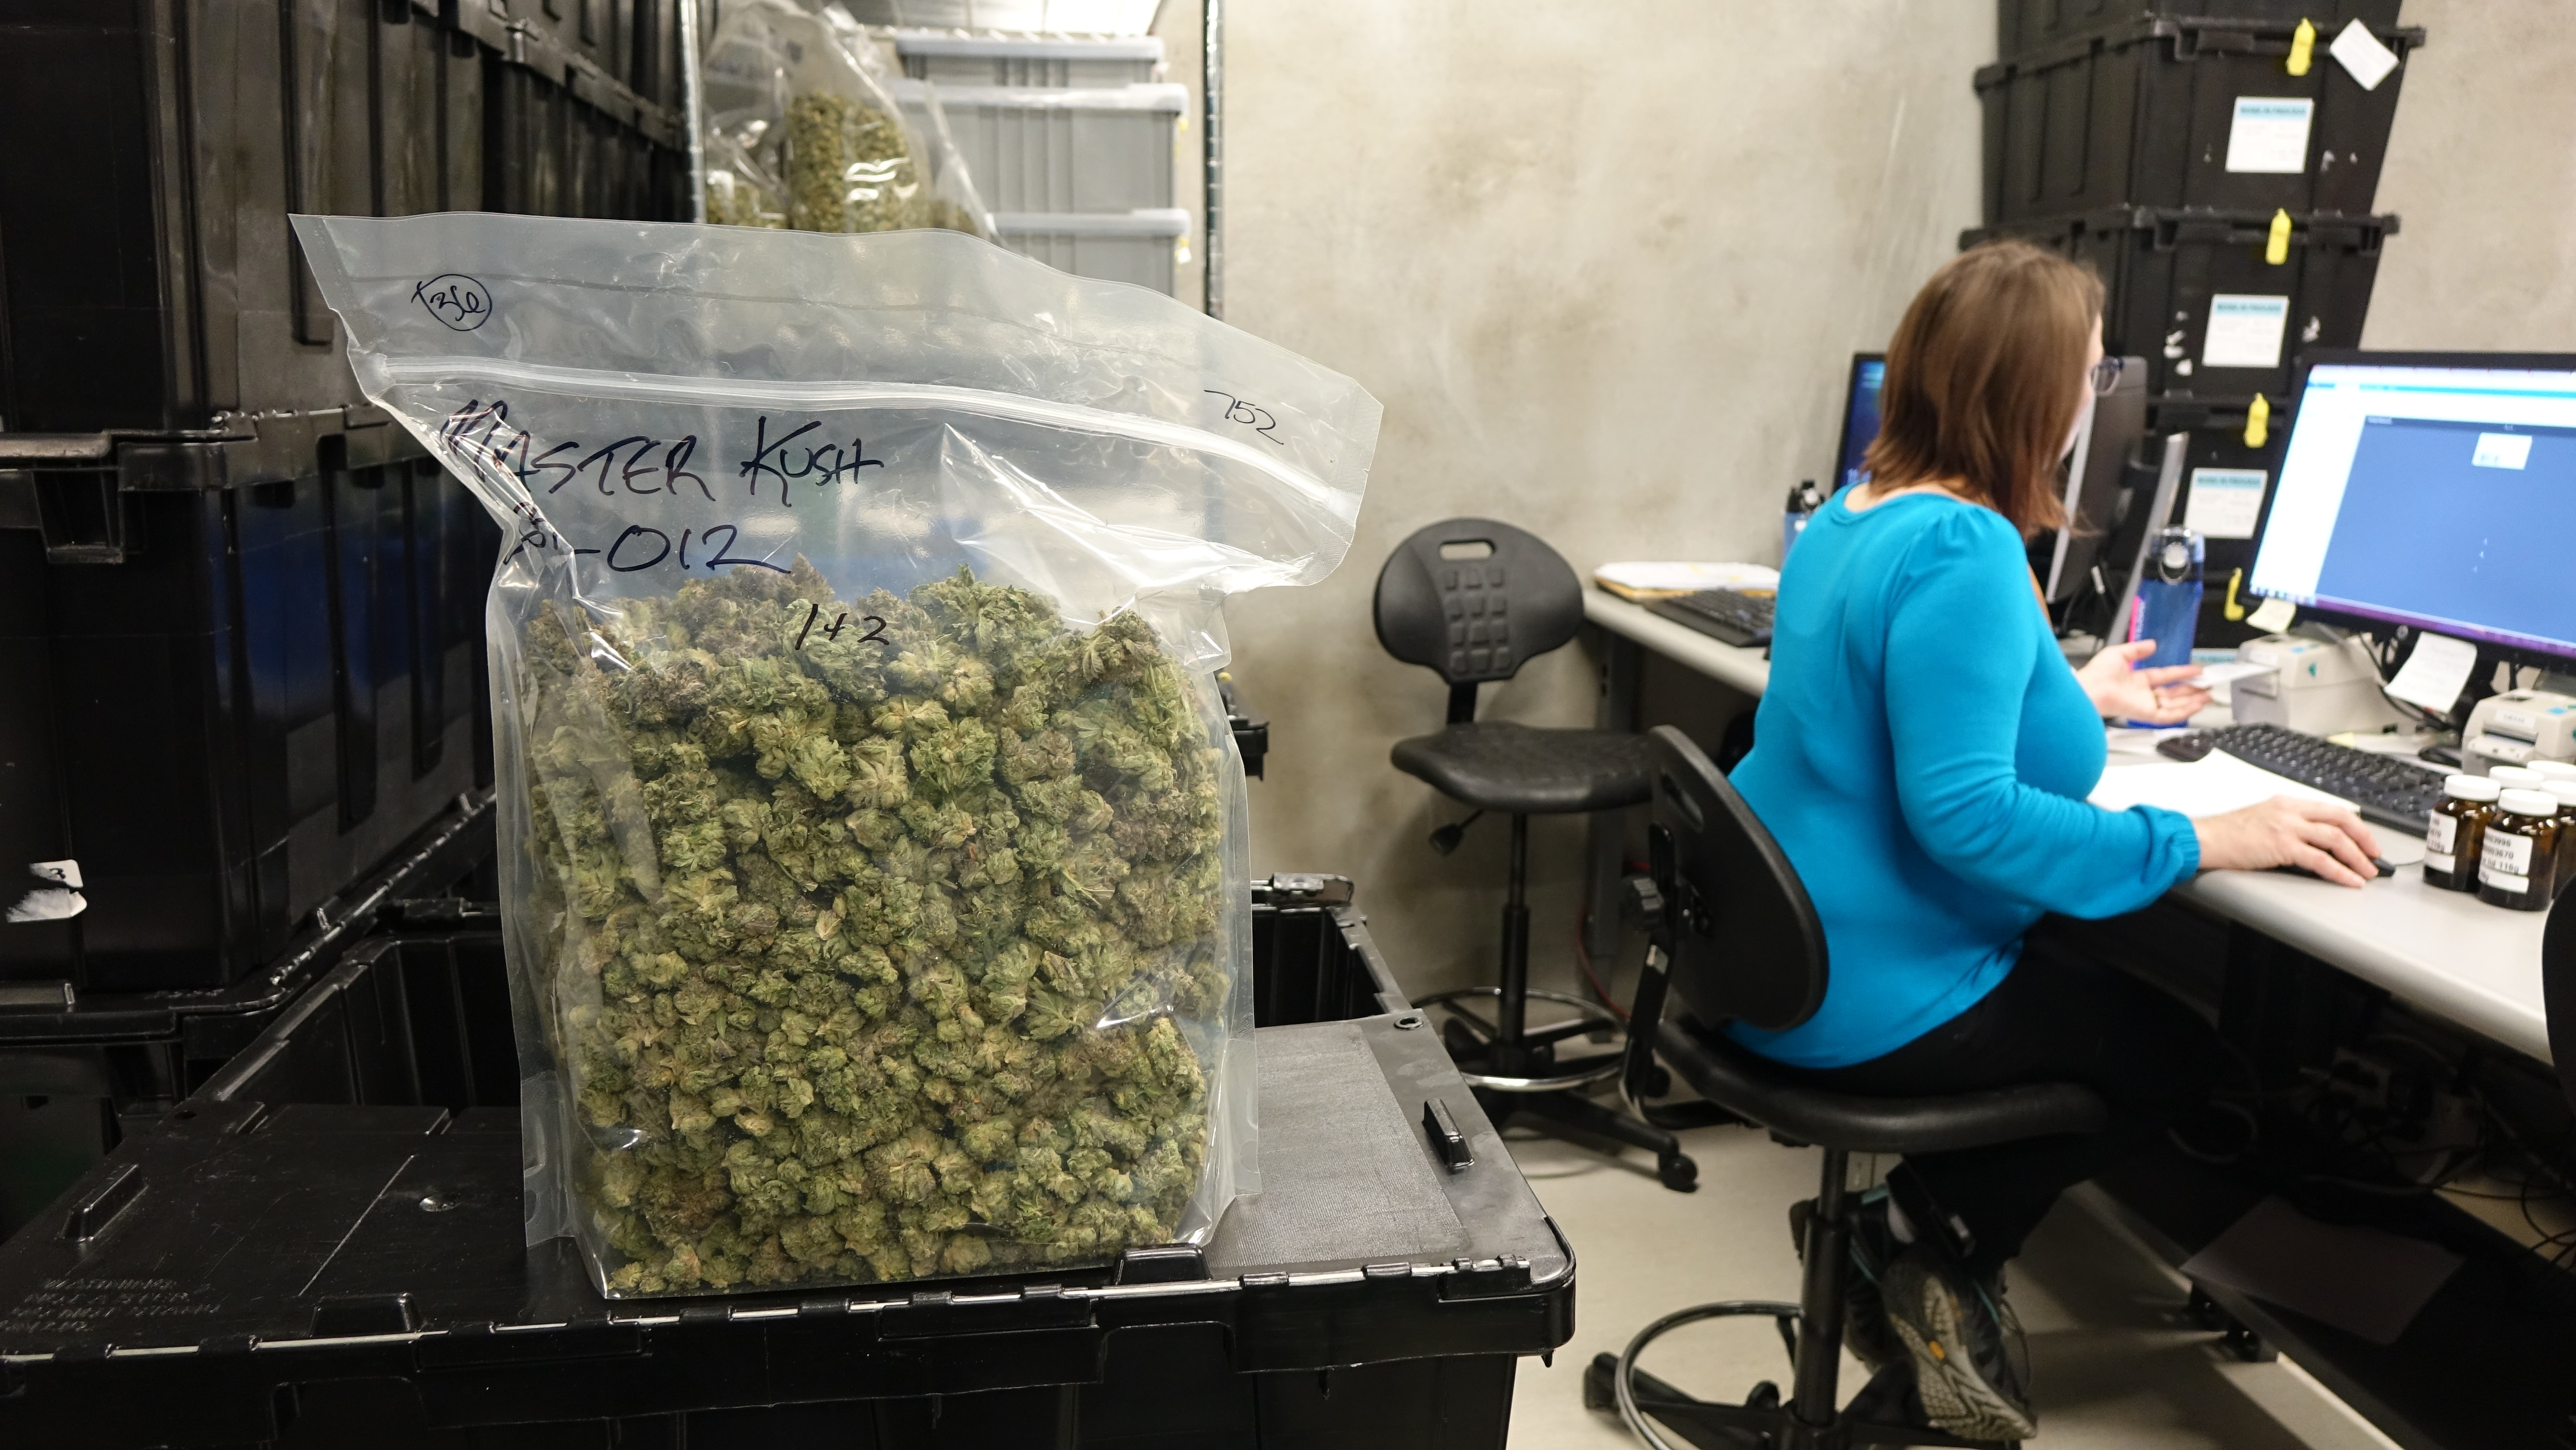 Un sac de cannabis près d'une femme devant un ordinateur.